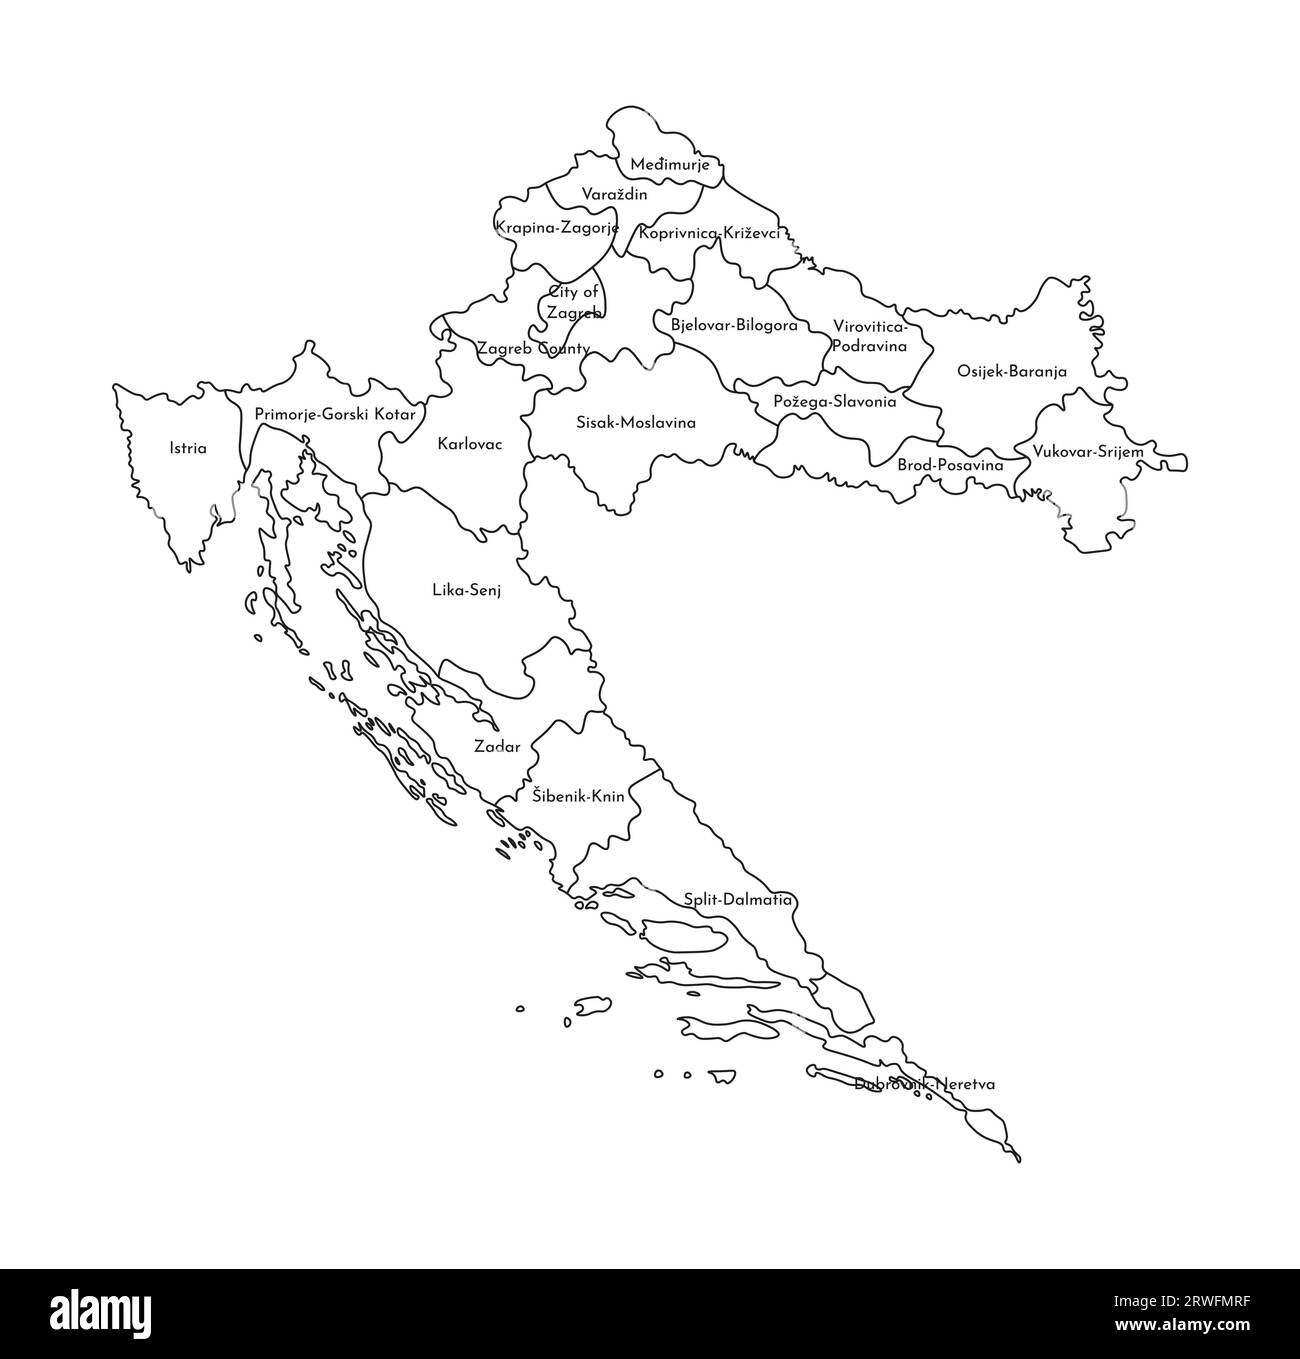 Vektor-isolierte Illustration einer vereinfachten Verwaltungskarte Kroatiens. Grenzen und Namen der Regionen. Silhouetten mit schwarzen Linien. Stock Vektor